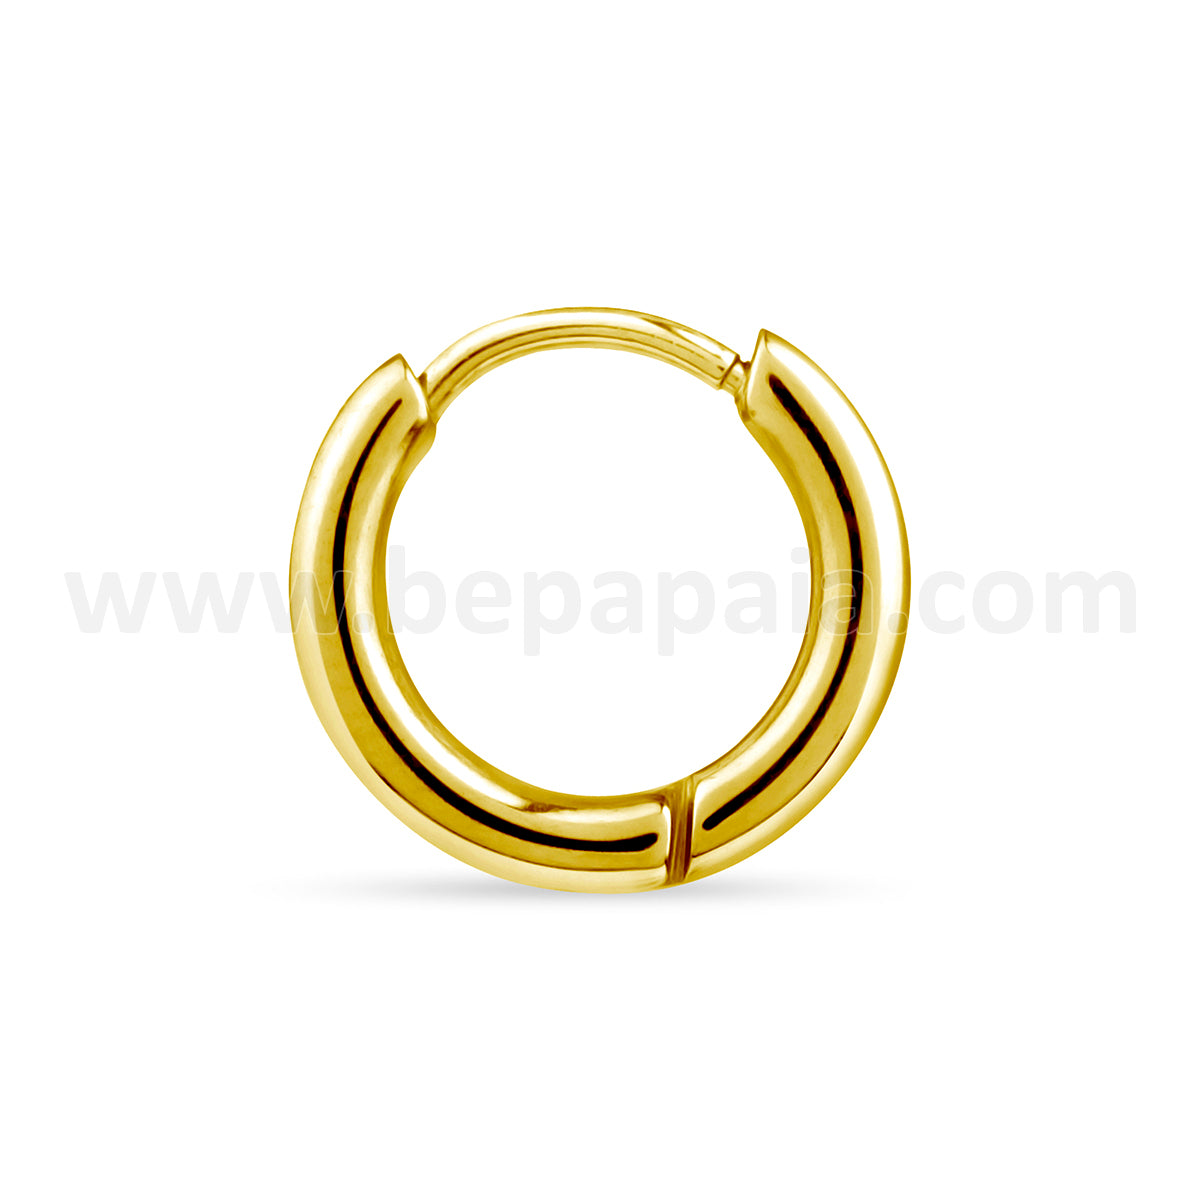 Cerchio d'acciaio dorato da 2 mm (piccole dimensioni: 8-12 mm)